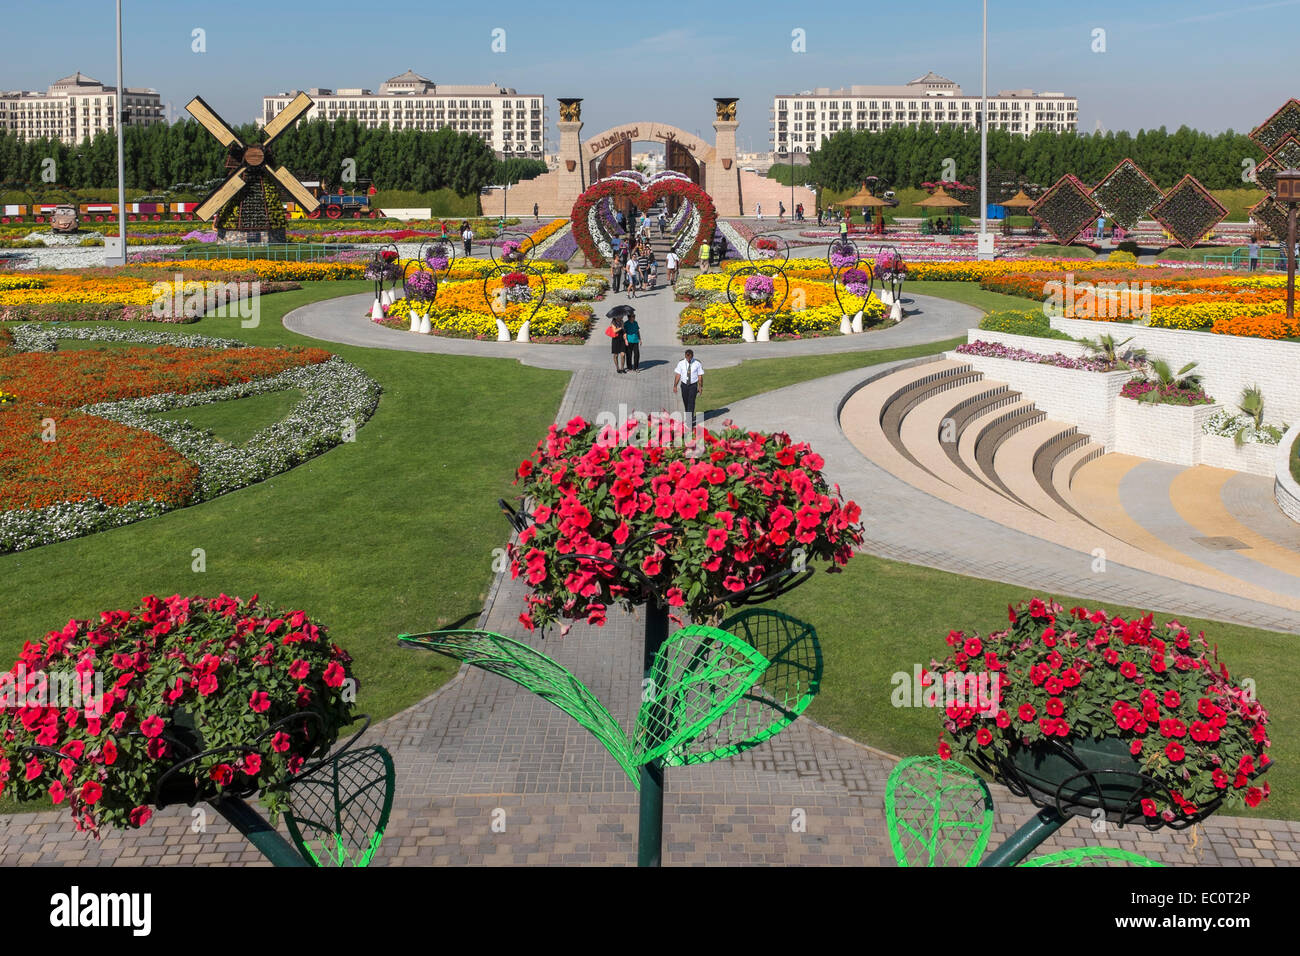 Anzeigen des Gartens Miracle Garden der weltweit größten Blumengarten in Dubai Vereinigte Arabische Emirate Stockfoto